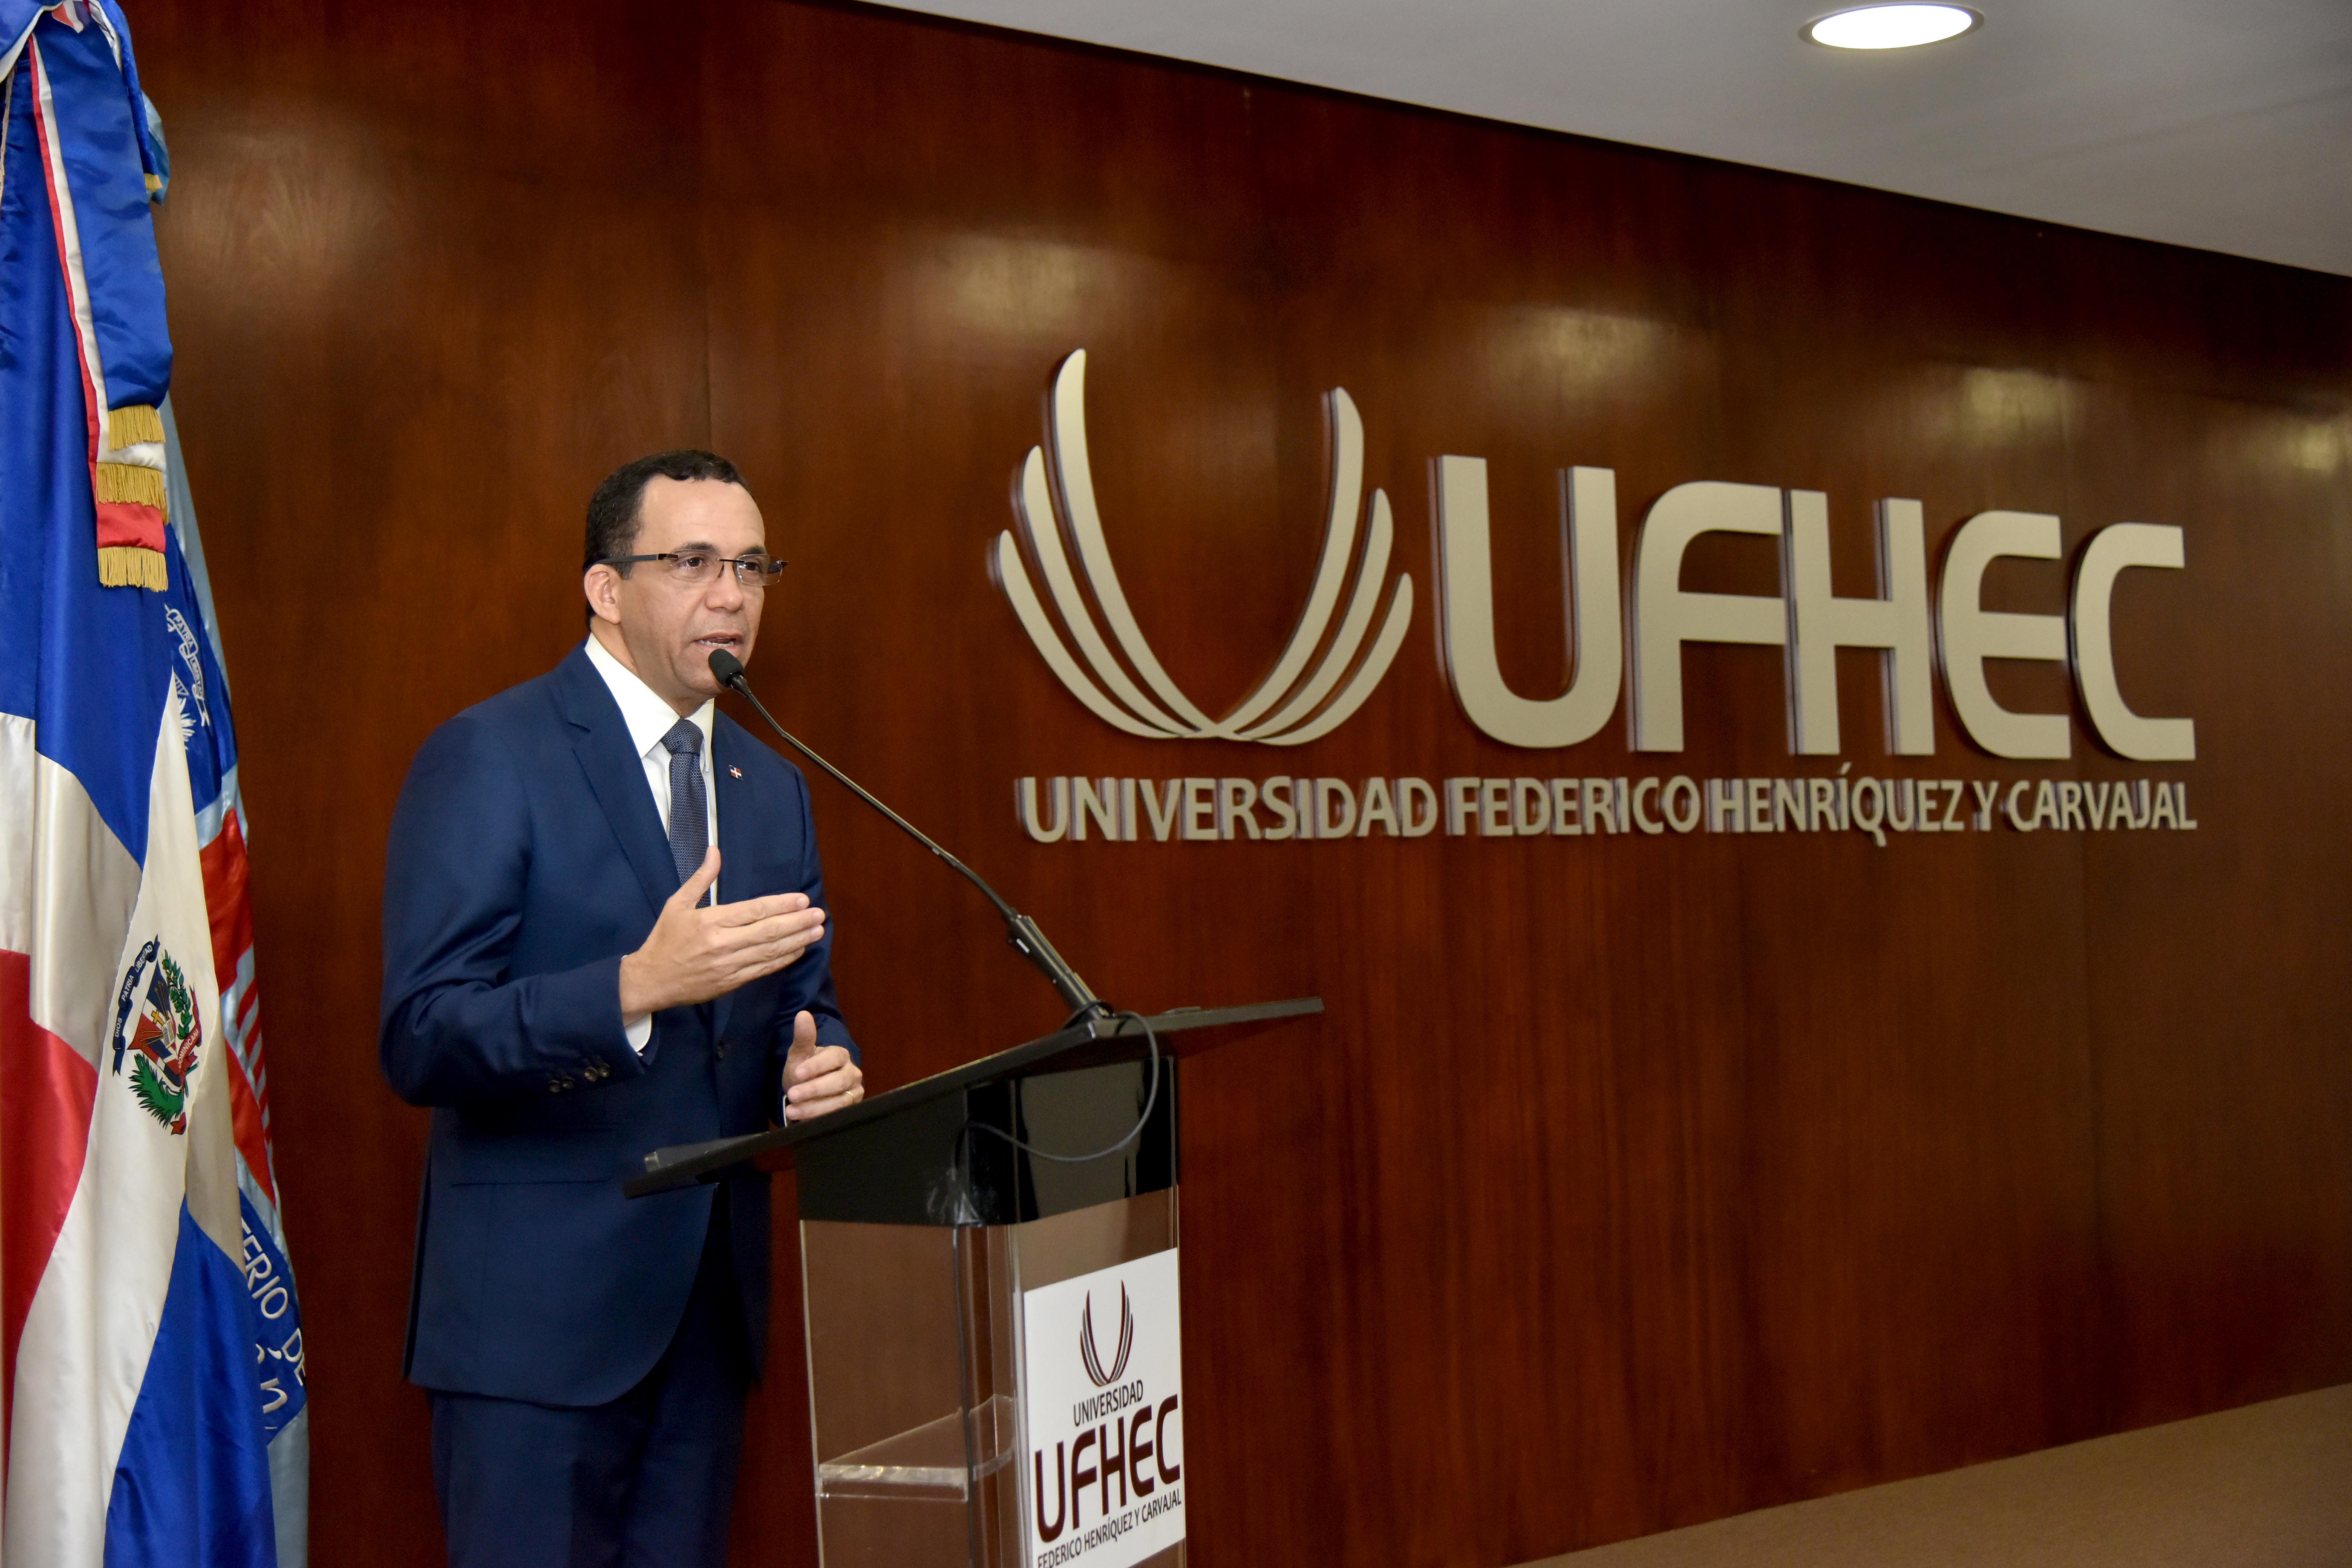  imagen Ministro Andrés Navarro de pie en podium dirigiendo discurso a personas en auditorium de la universidad Federico Henríquez y Carvajal  